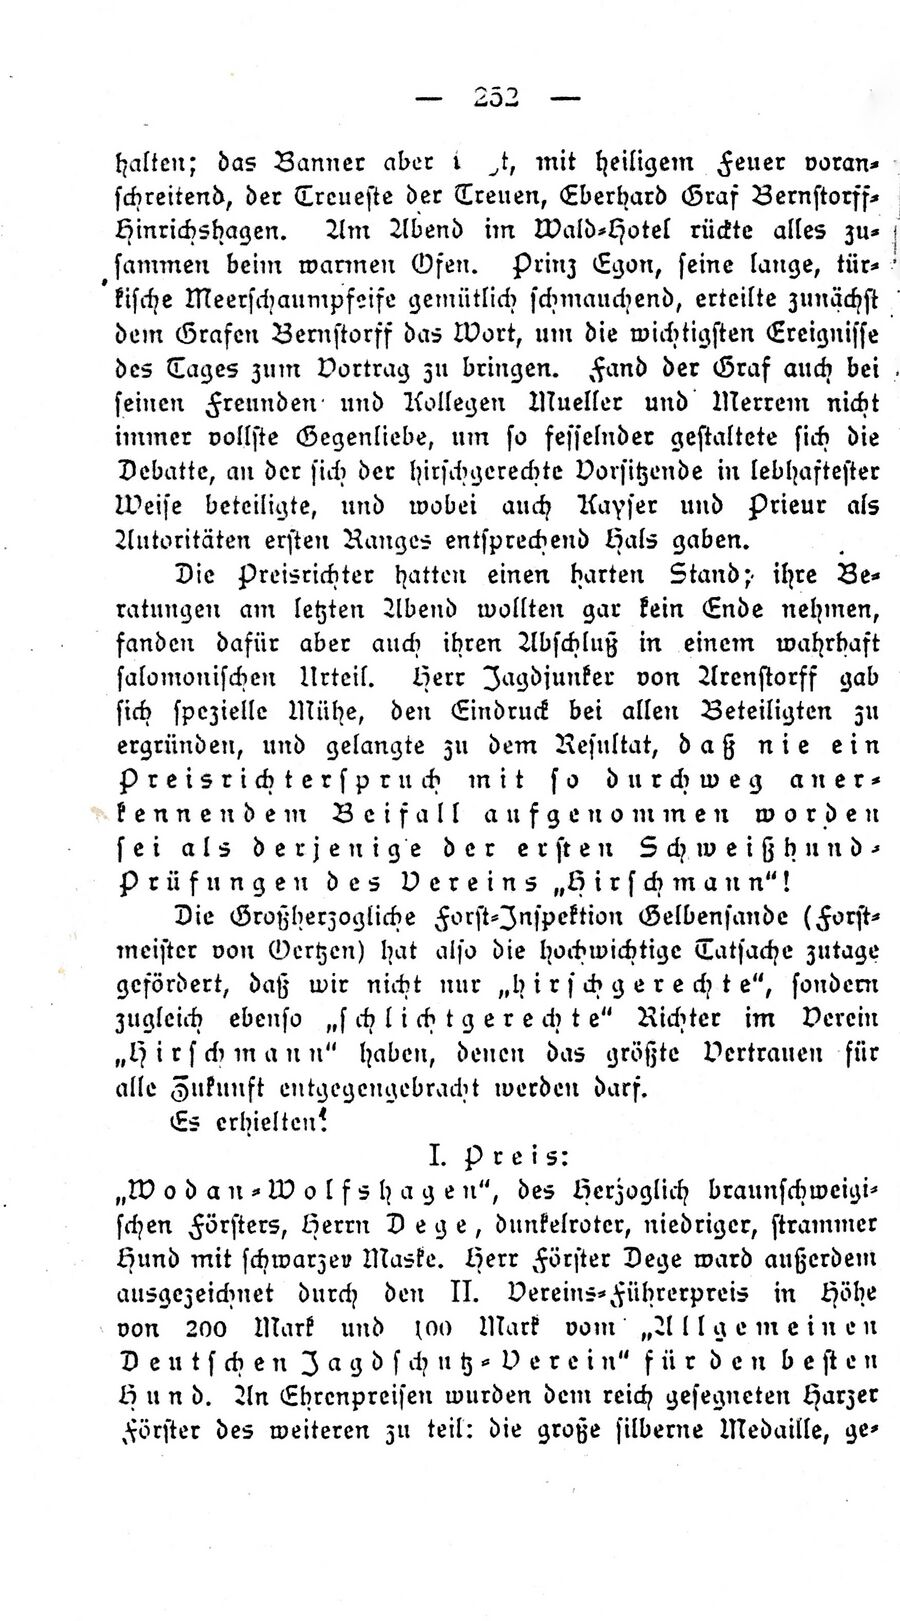 Gelb Forst Ausflug Reichs-Jagdhundeverein 18951 13